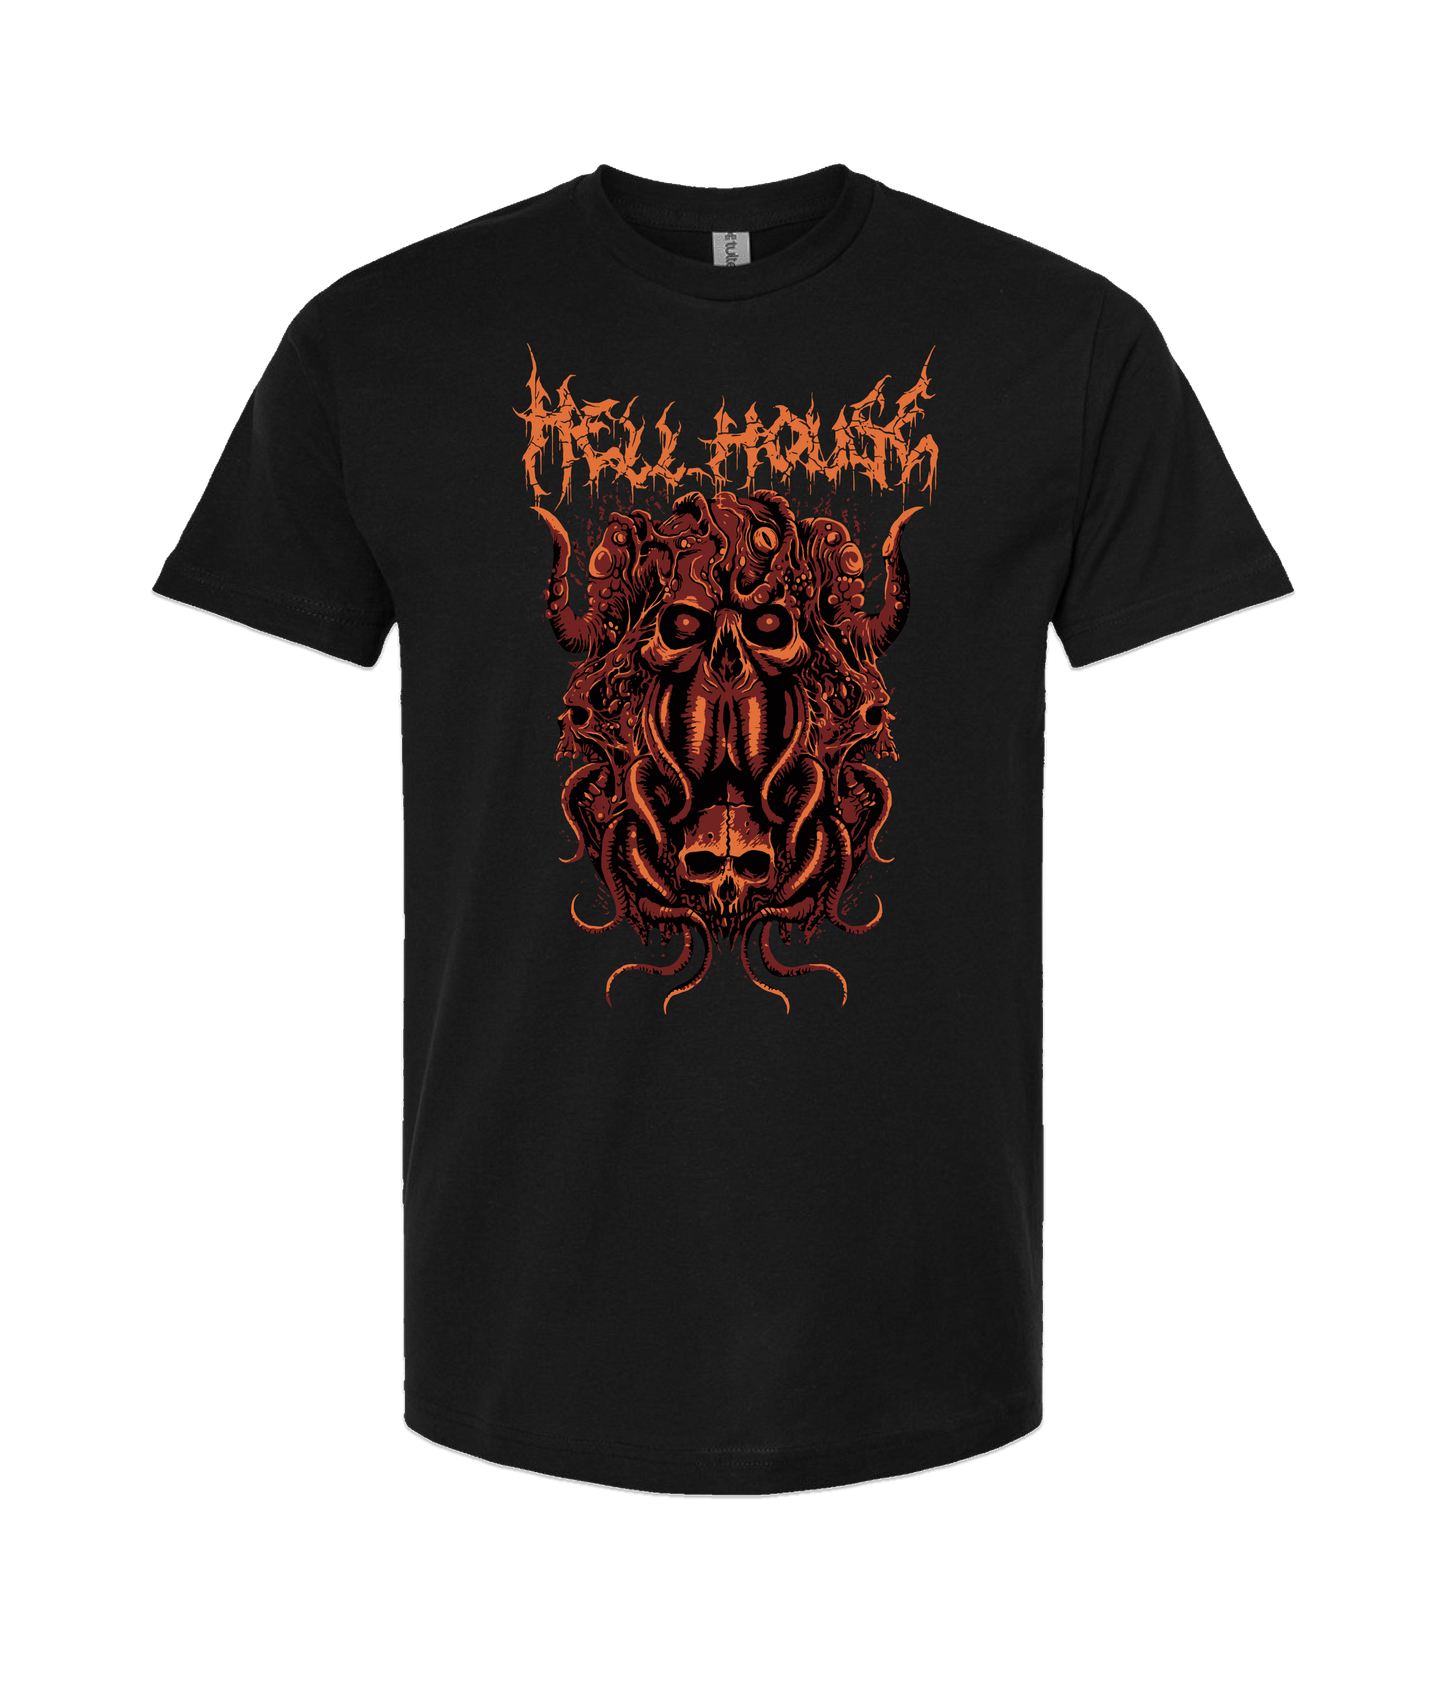 Hellhouse crypt - OCTOPUSSSKVLL - Black T Shirt